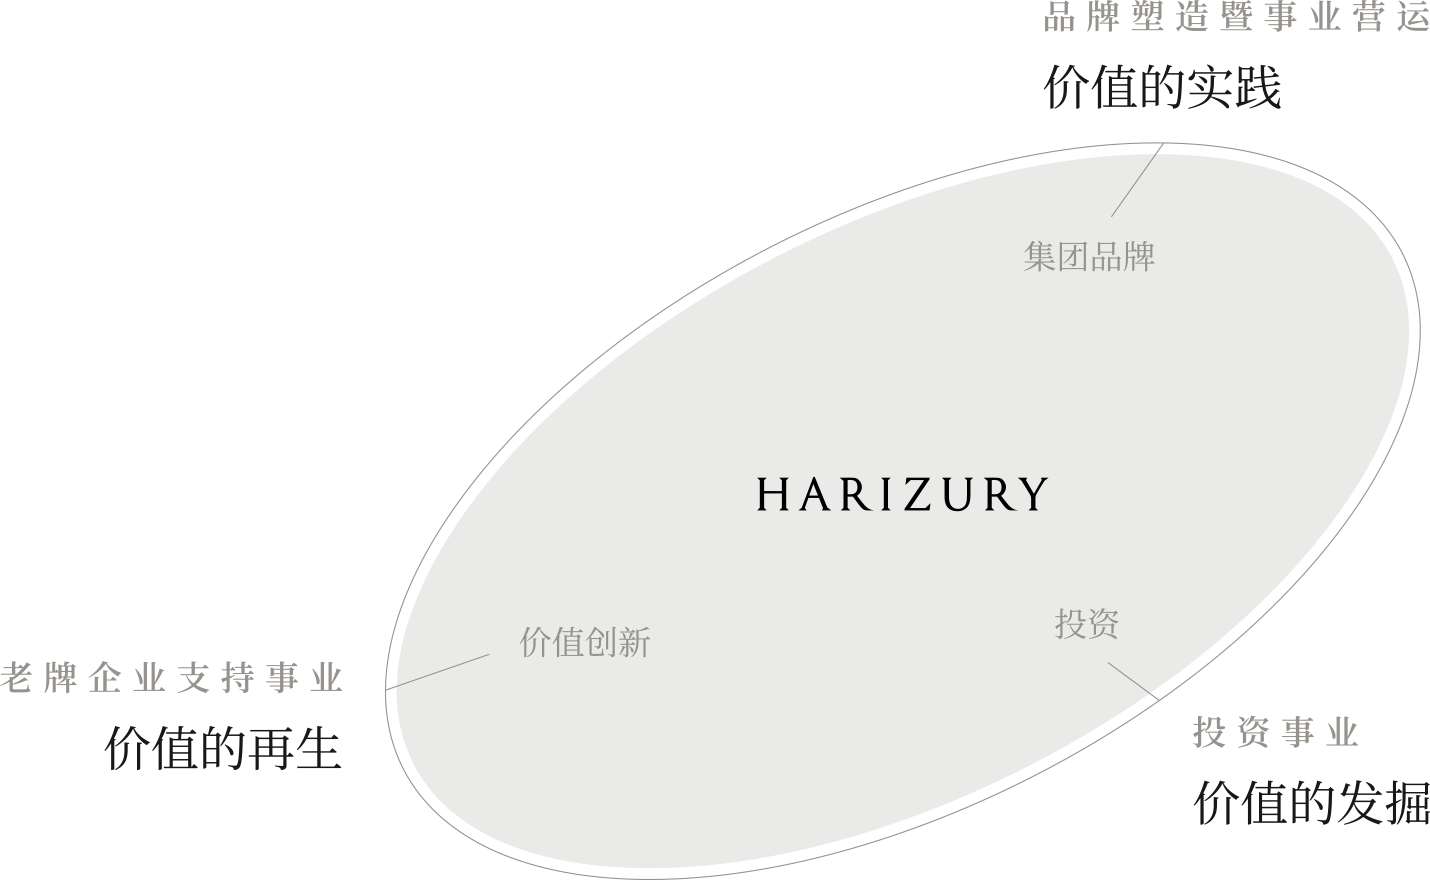 HARIZURY 老牌企业支持事业(价值的再生) 投资事业(价值的发掘) 品牌塑造暨事业营运(价值的实践)